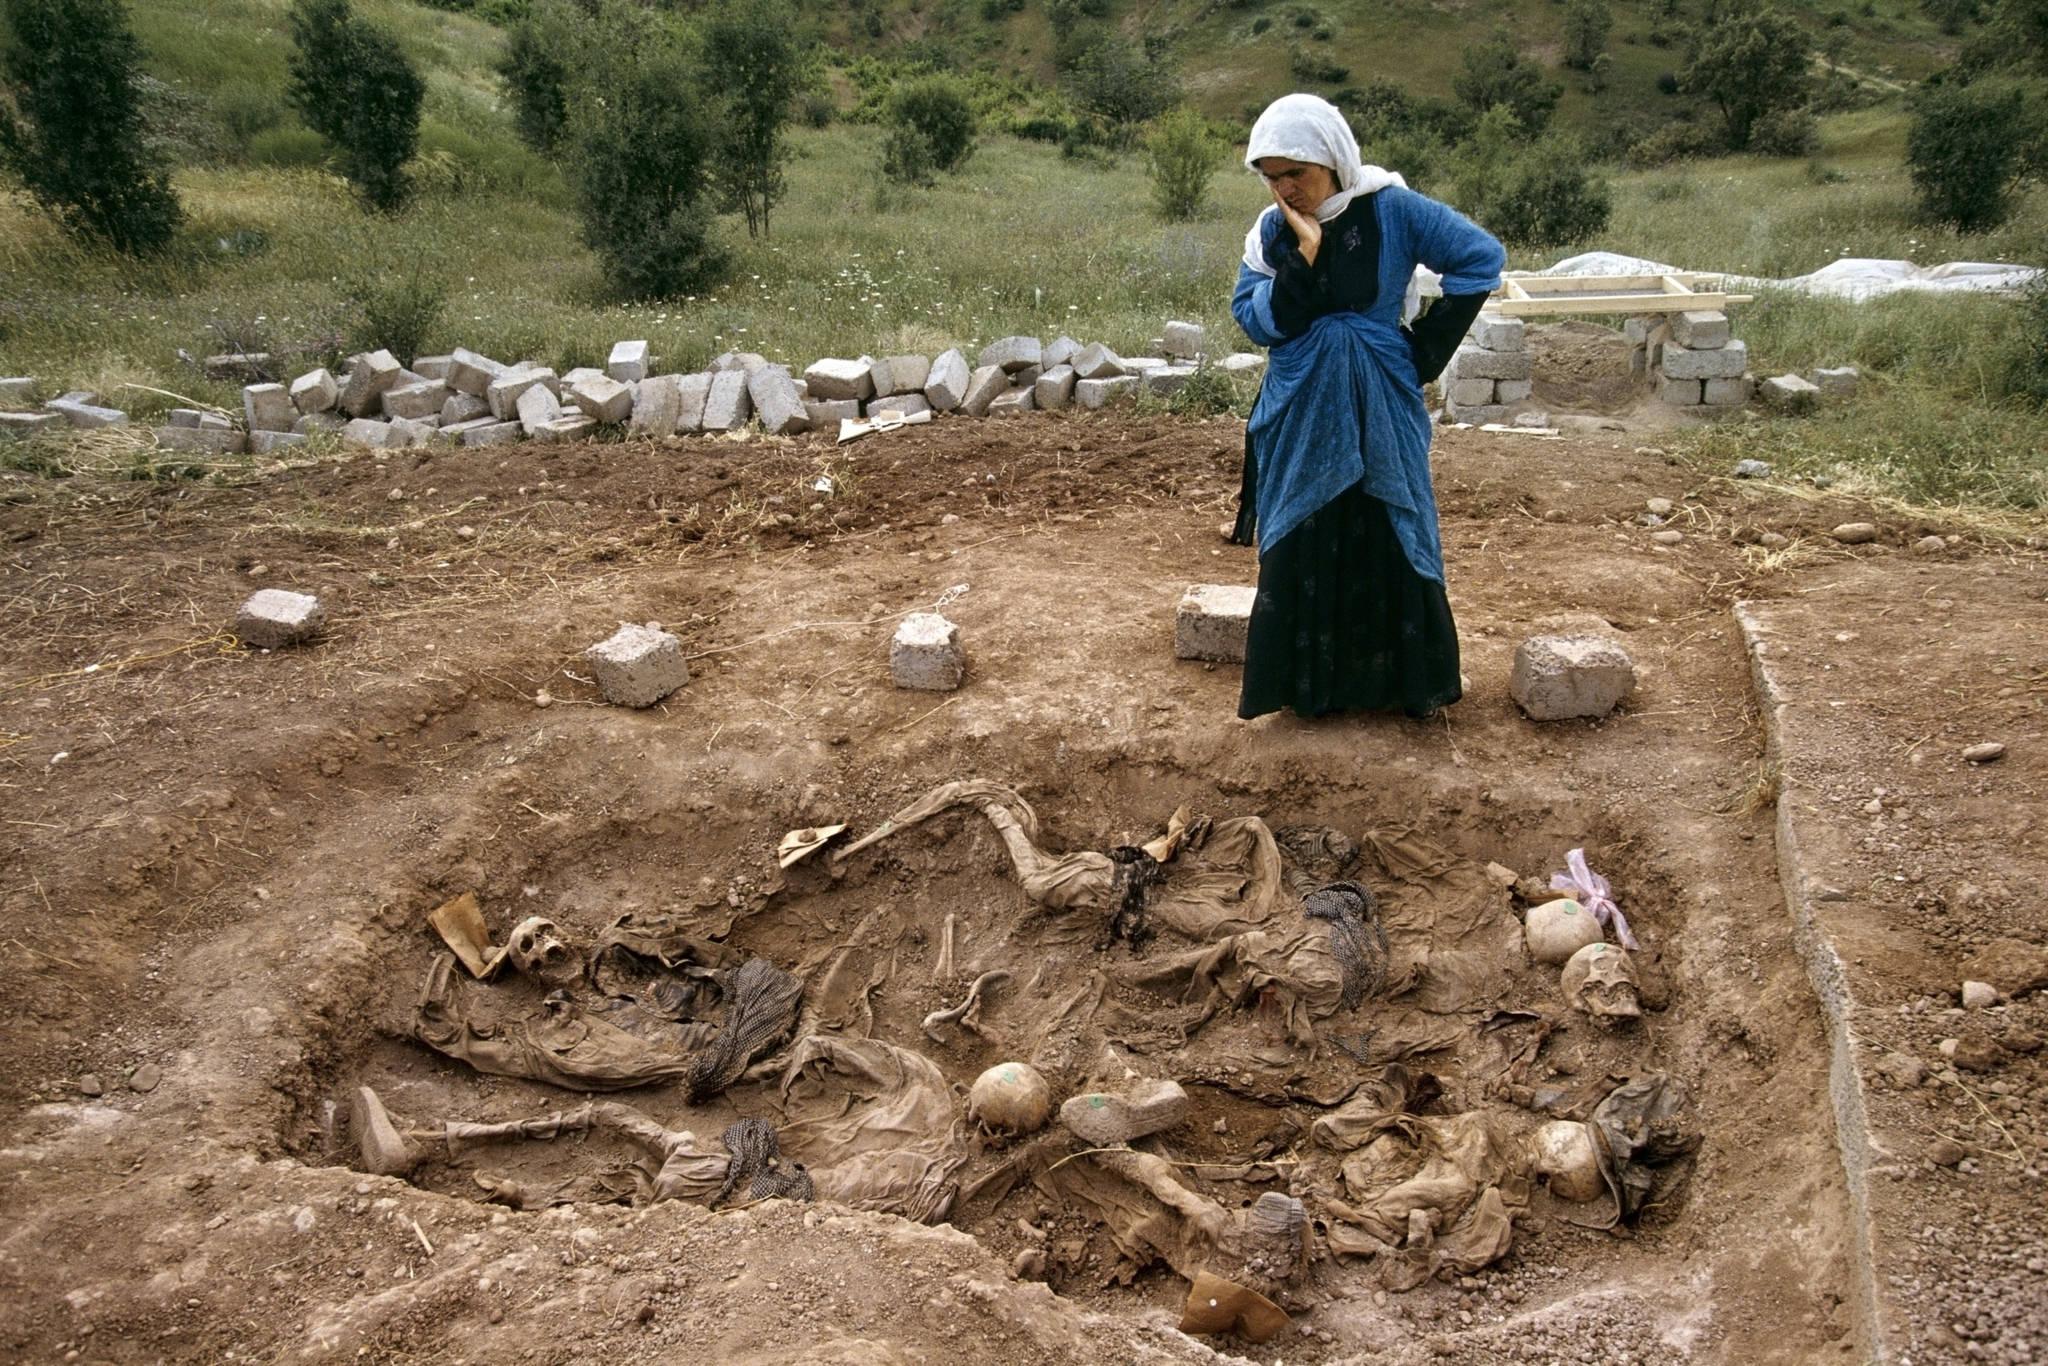 Susan Meiselas, 'Widow at mass grave found in Koreme, Northern Iraq,' 1992.